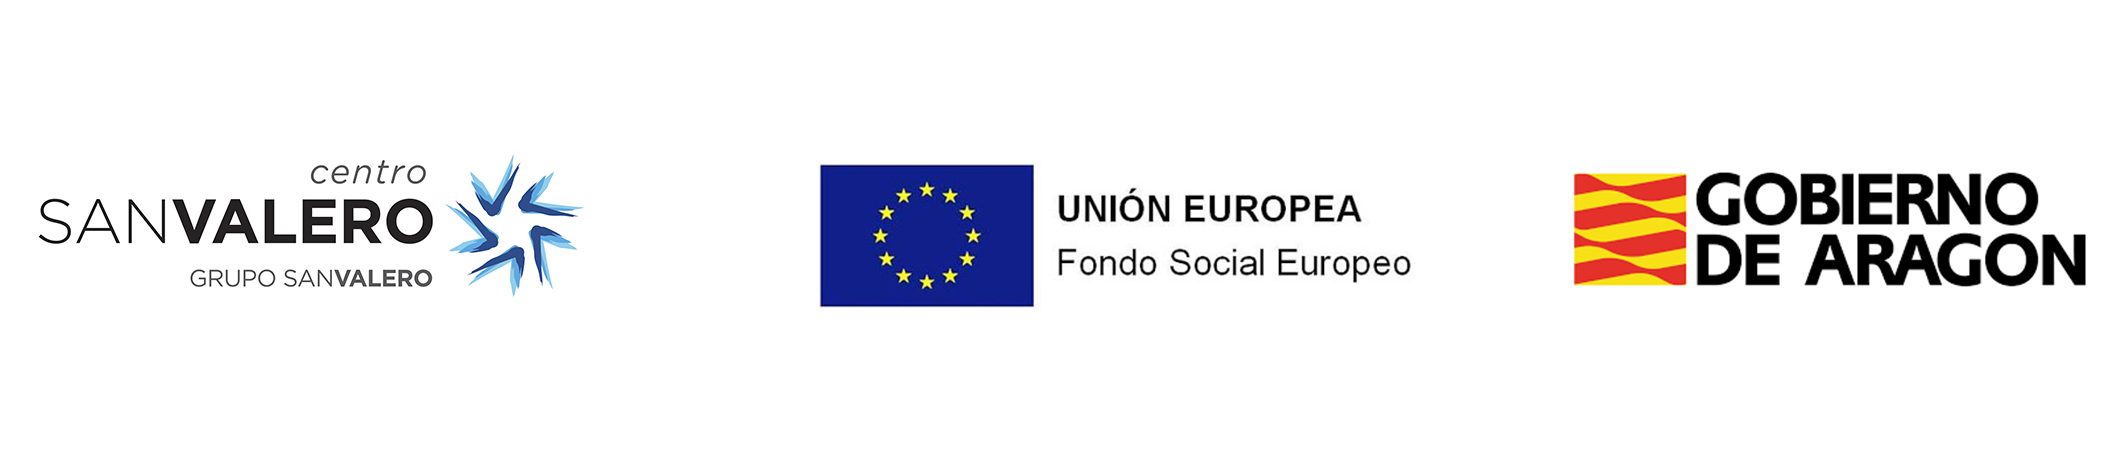 Fondo Social Europeo faldón